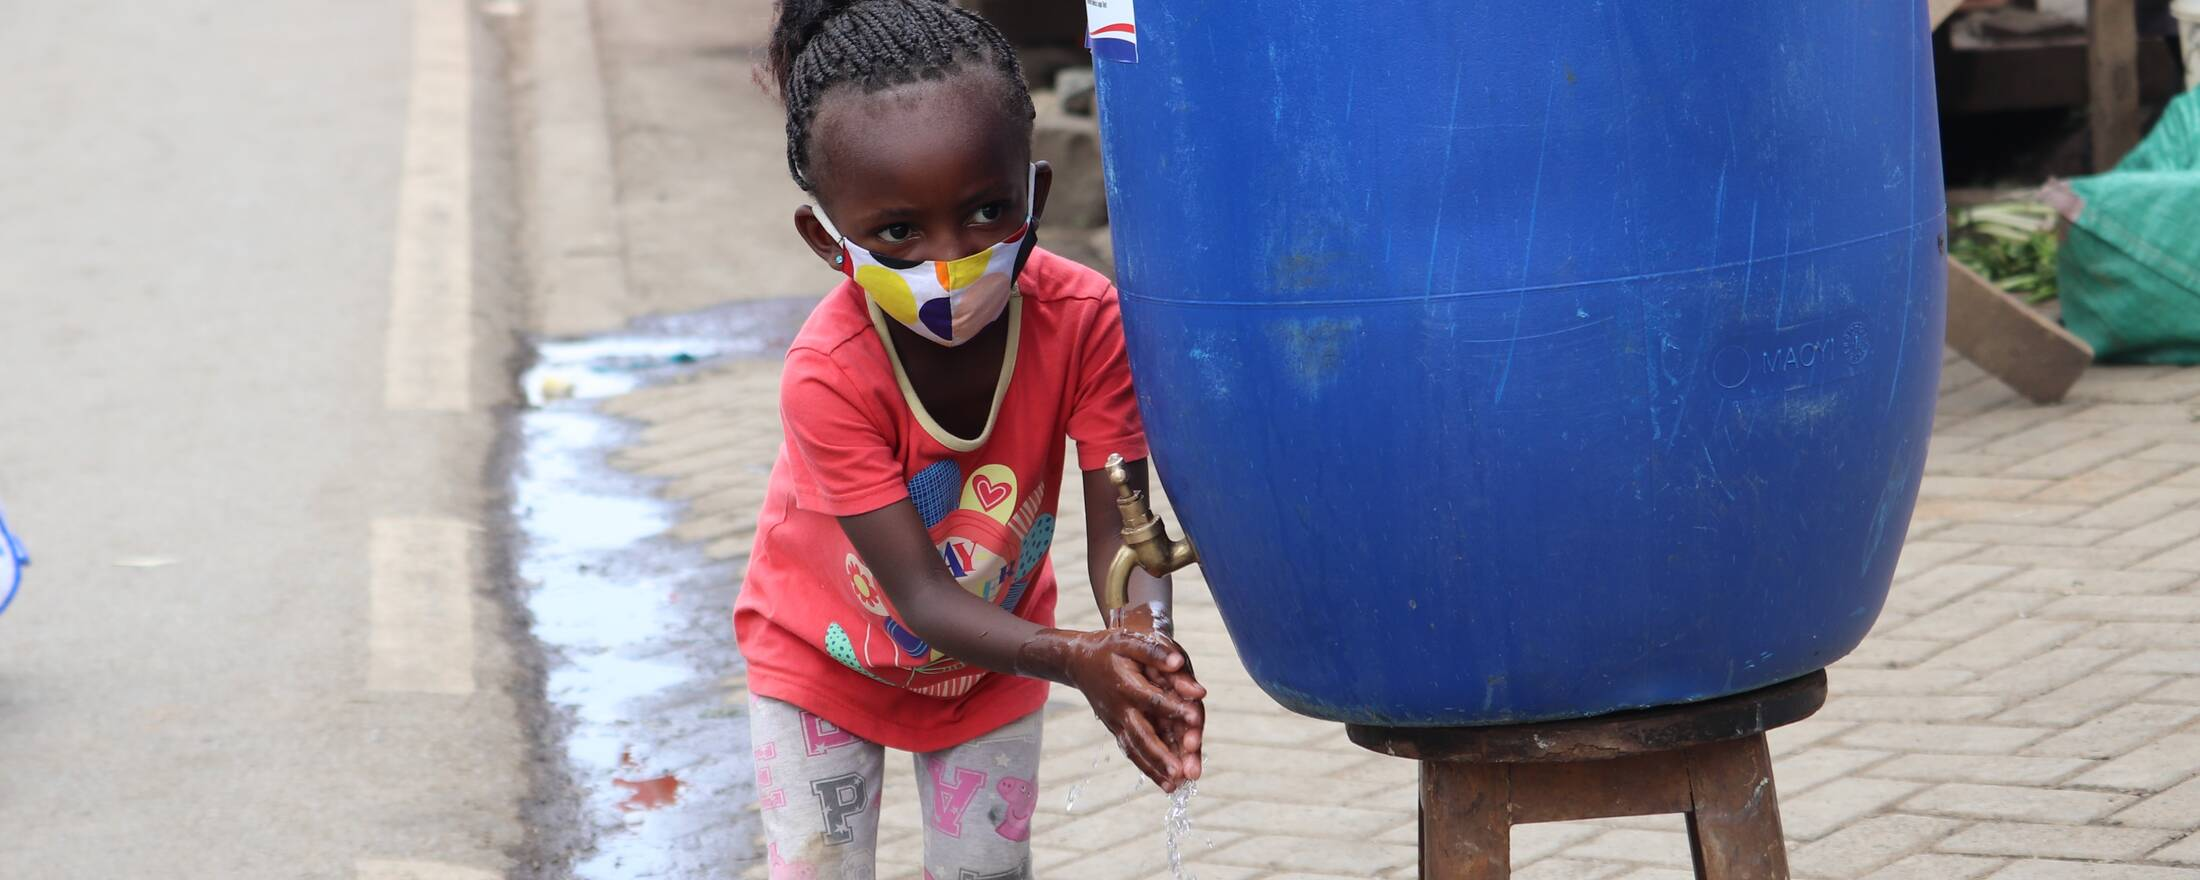 STORY: ケニア：ナイロビのインフォーマル居住区に国連ハビタット支援で手洗い場を設置